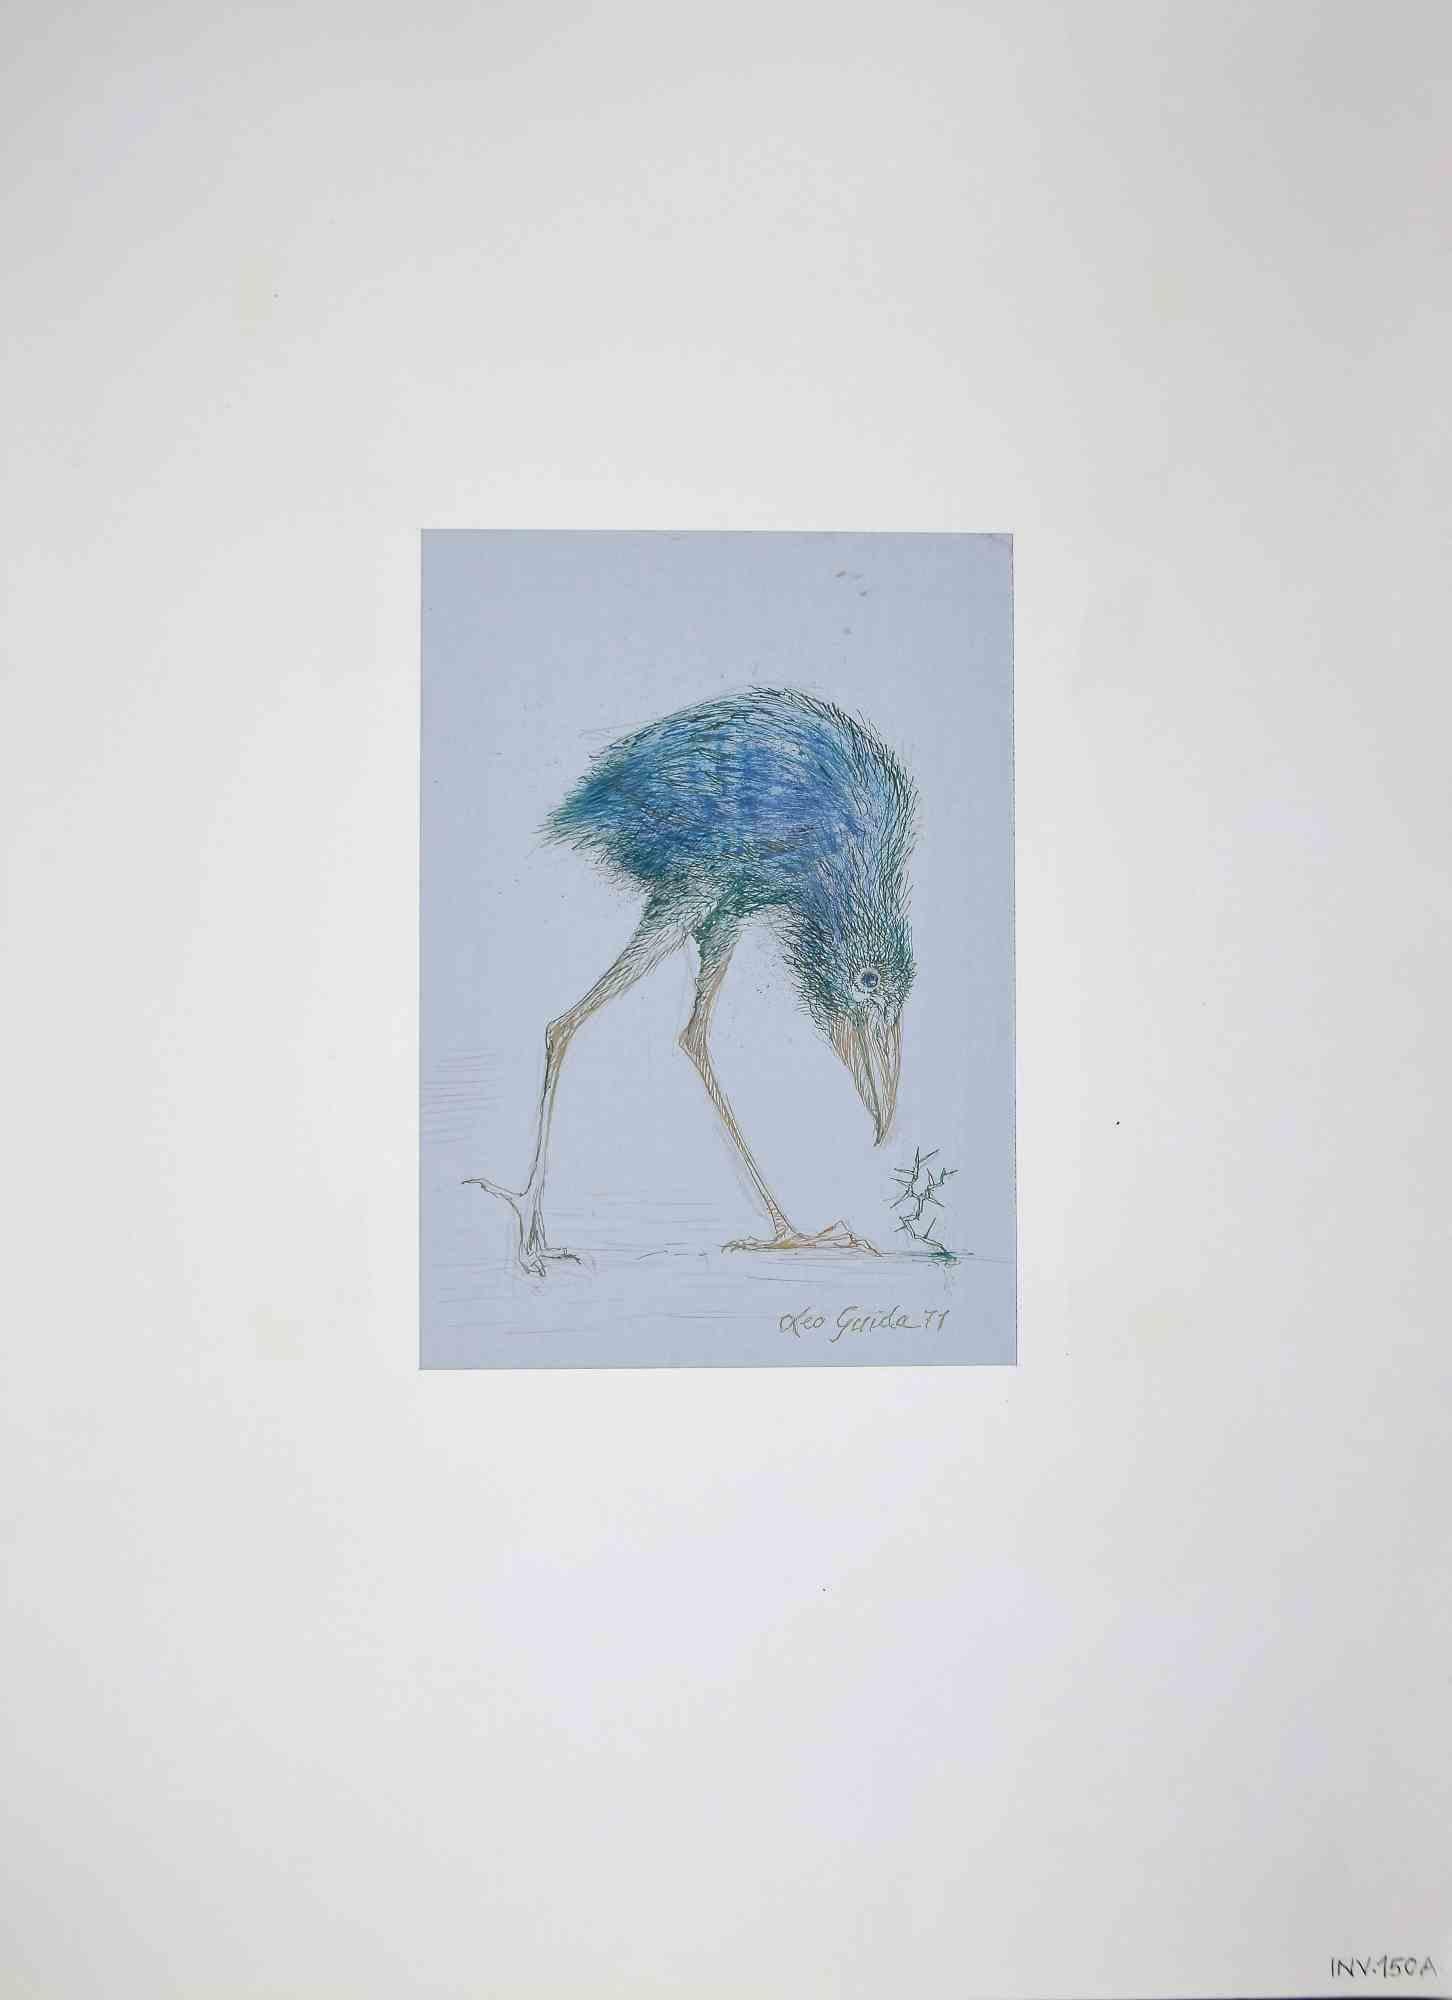 Bird est un dessin original à l'encre et au pastel réalisé par Leo Guida en 1971.

Bon état.

Leo Guida  (1992 - 2017). Sensible aux questions d'actualité, aux mouvements artistiques et aux techniques historiques, Leo Guida a su tisser avec de